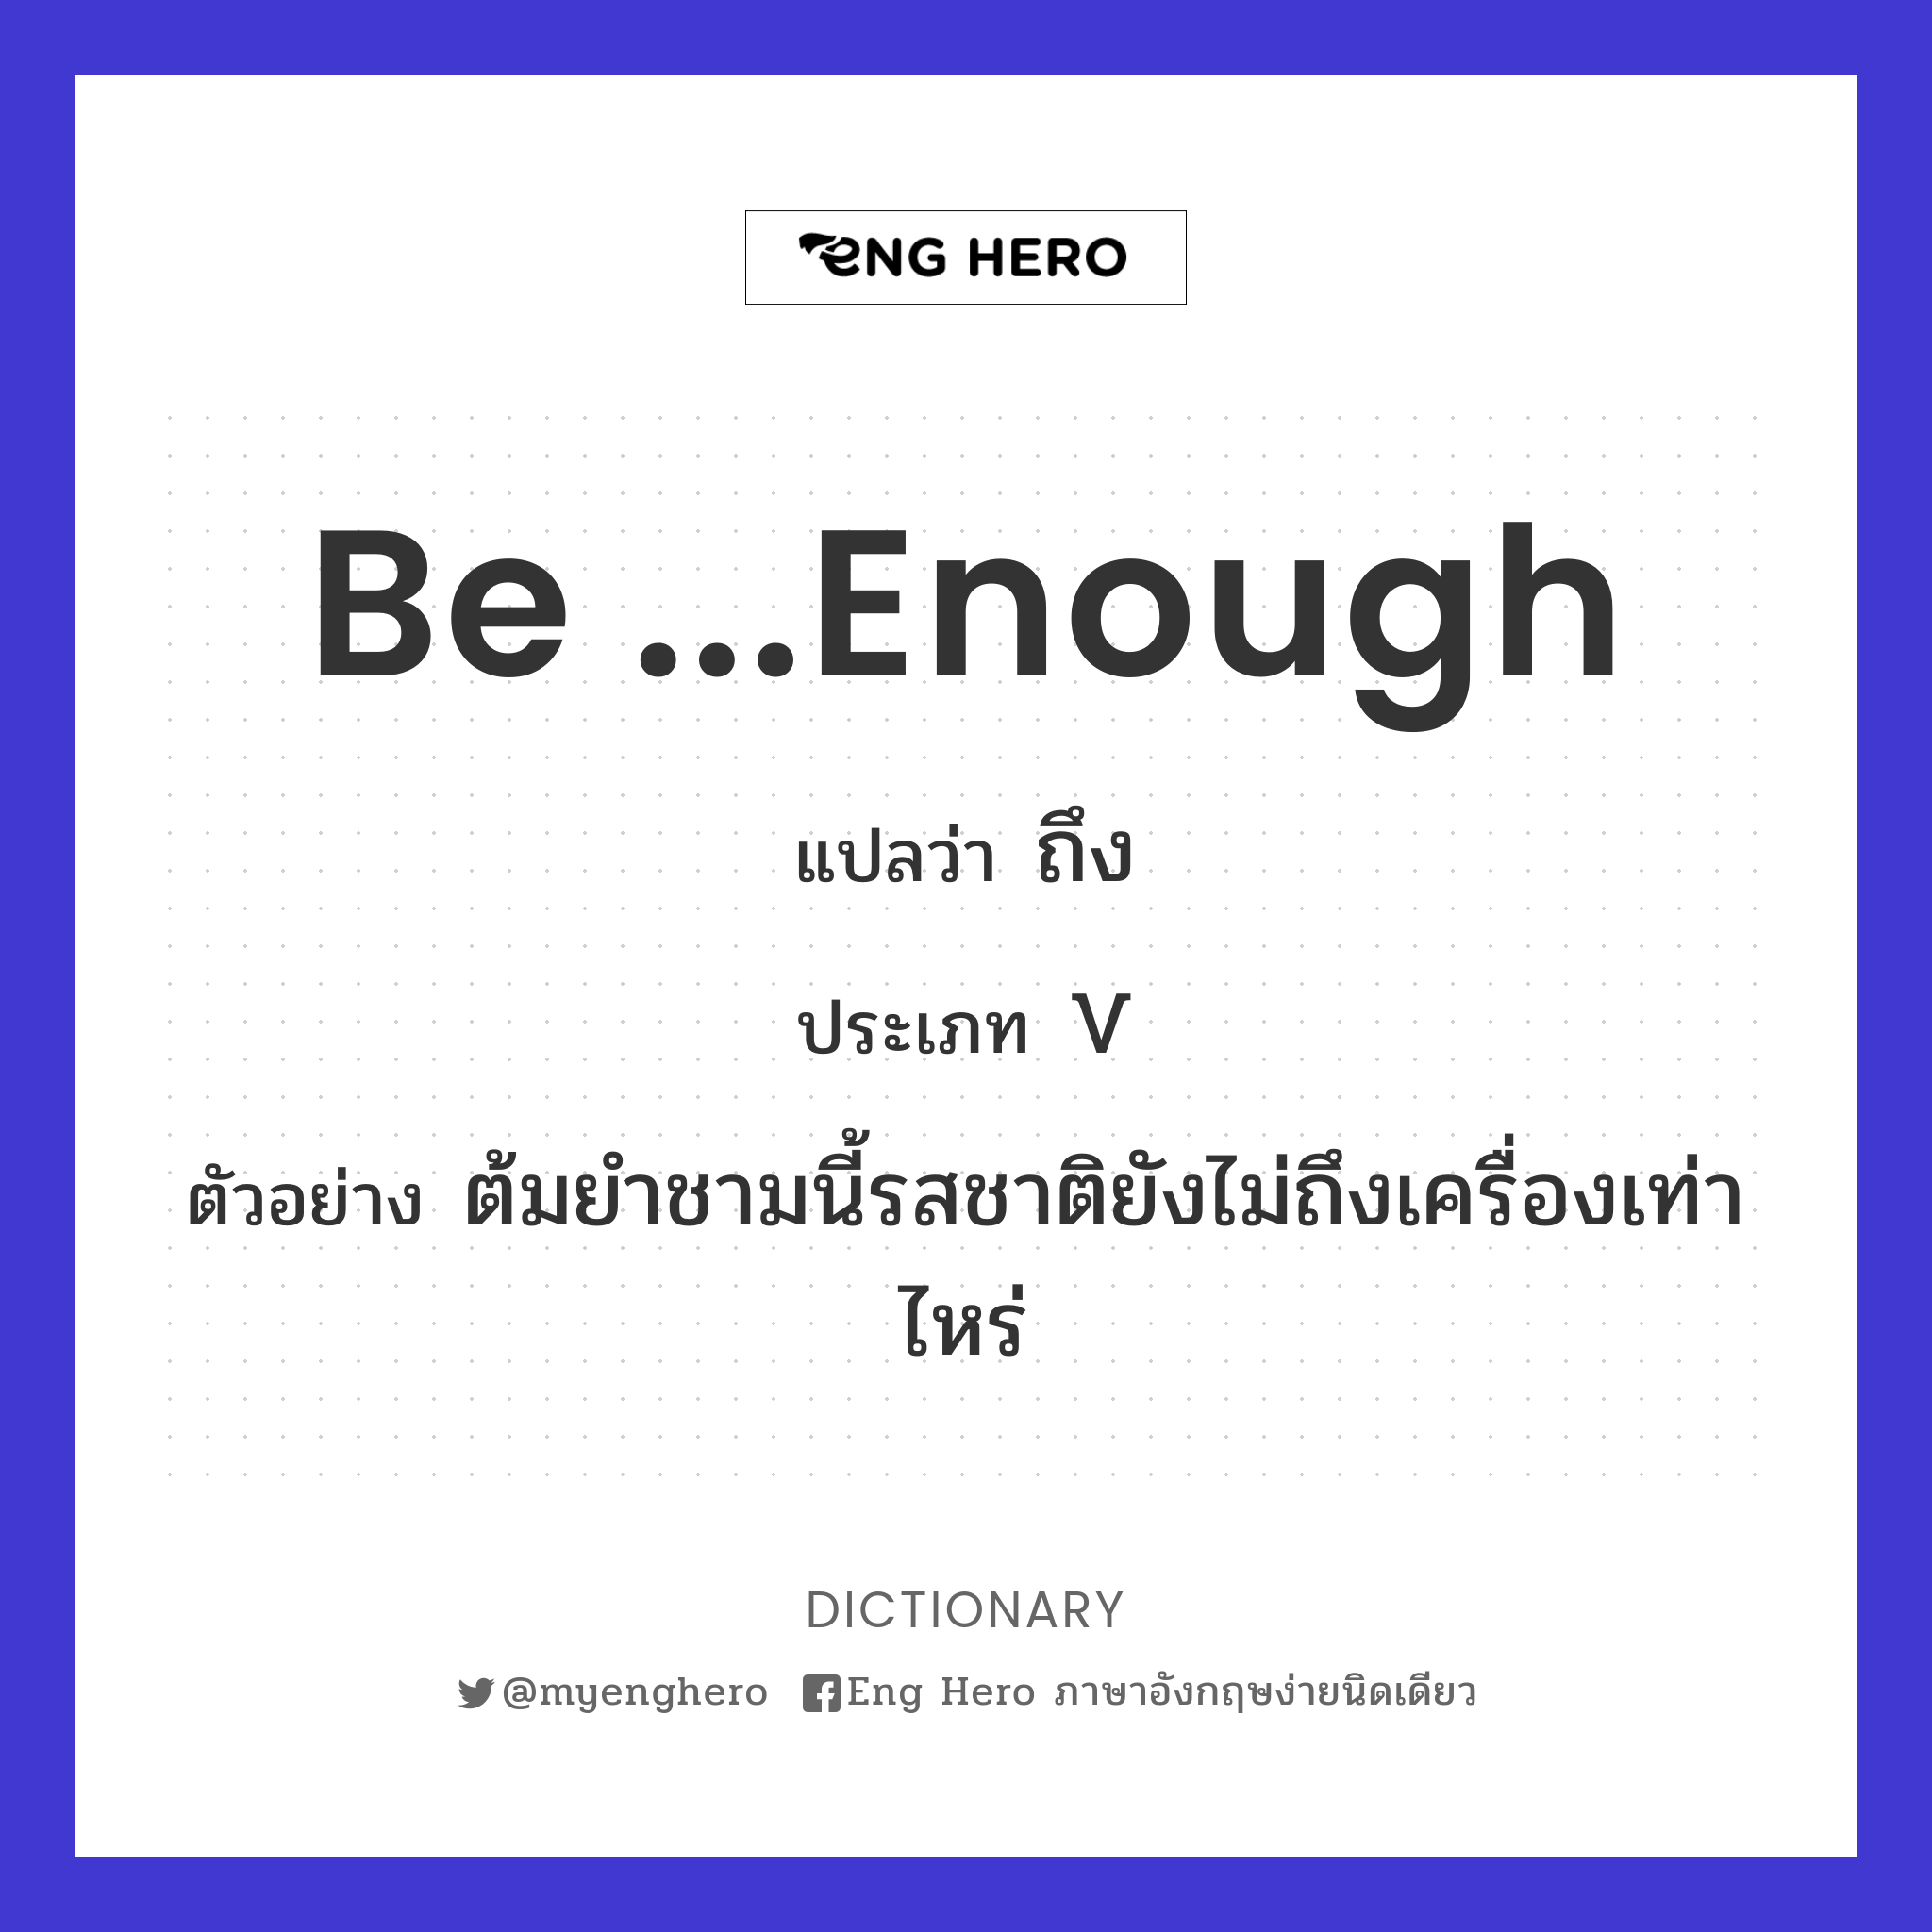 be ...enough